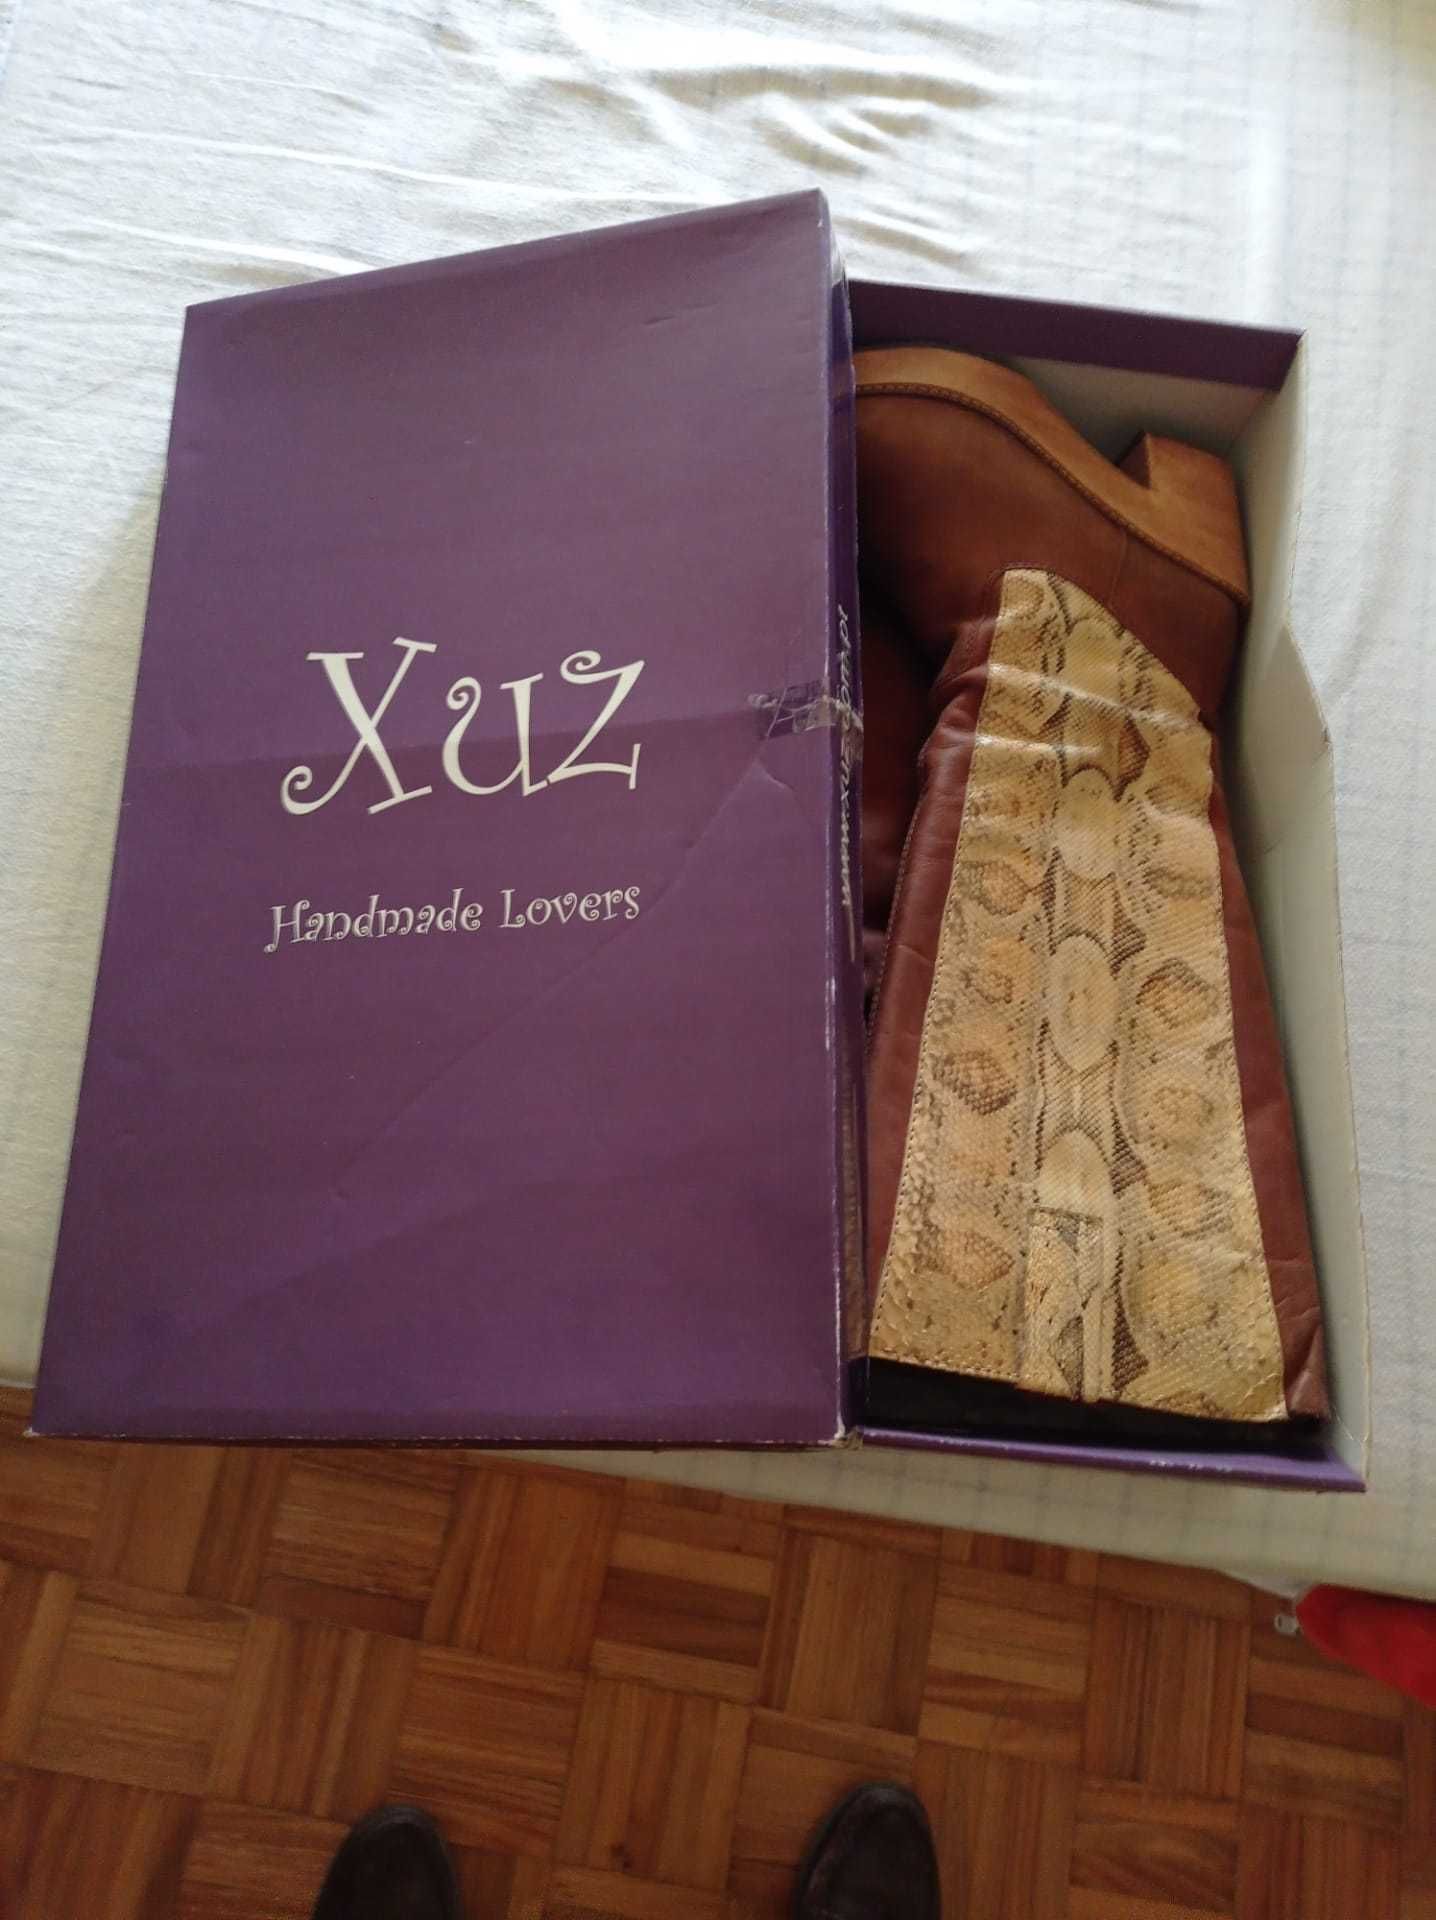 Botas em pele de cobra, marca Xuz (Handmade)